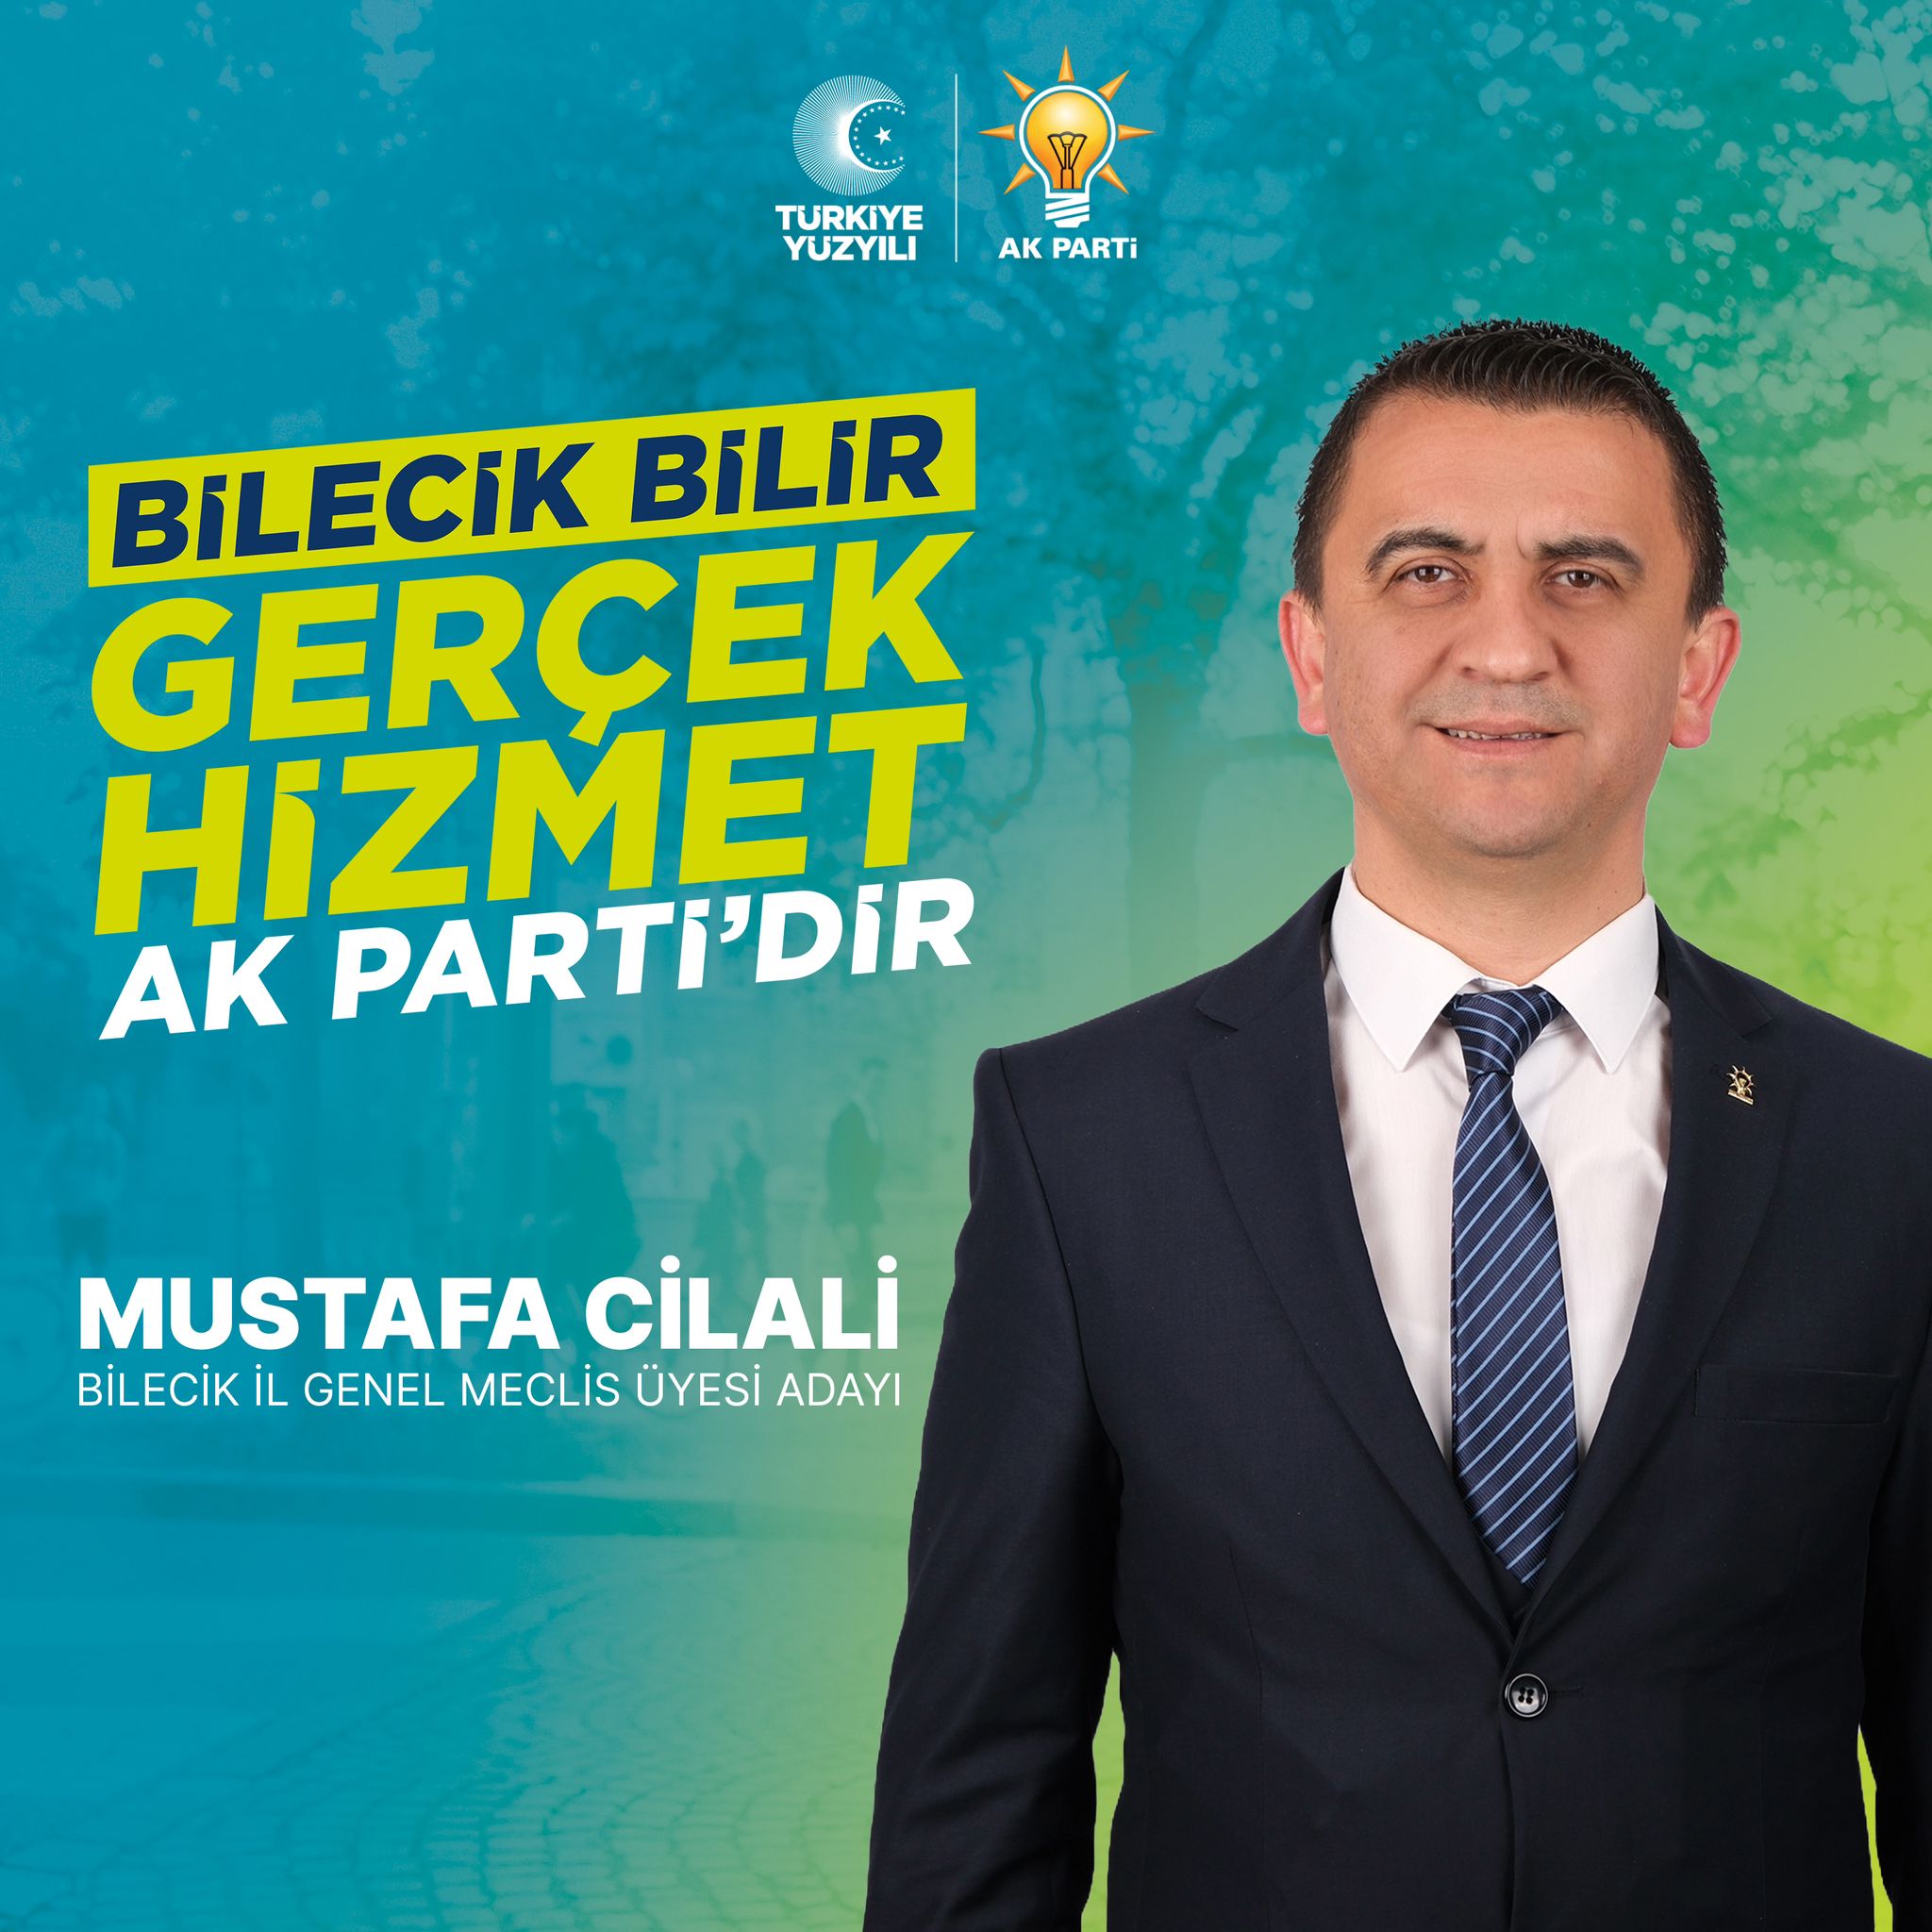 Mustafa Cilali